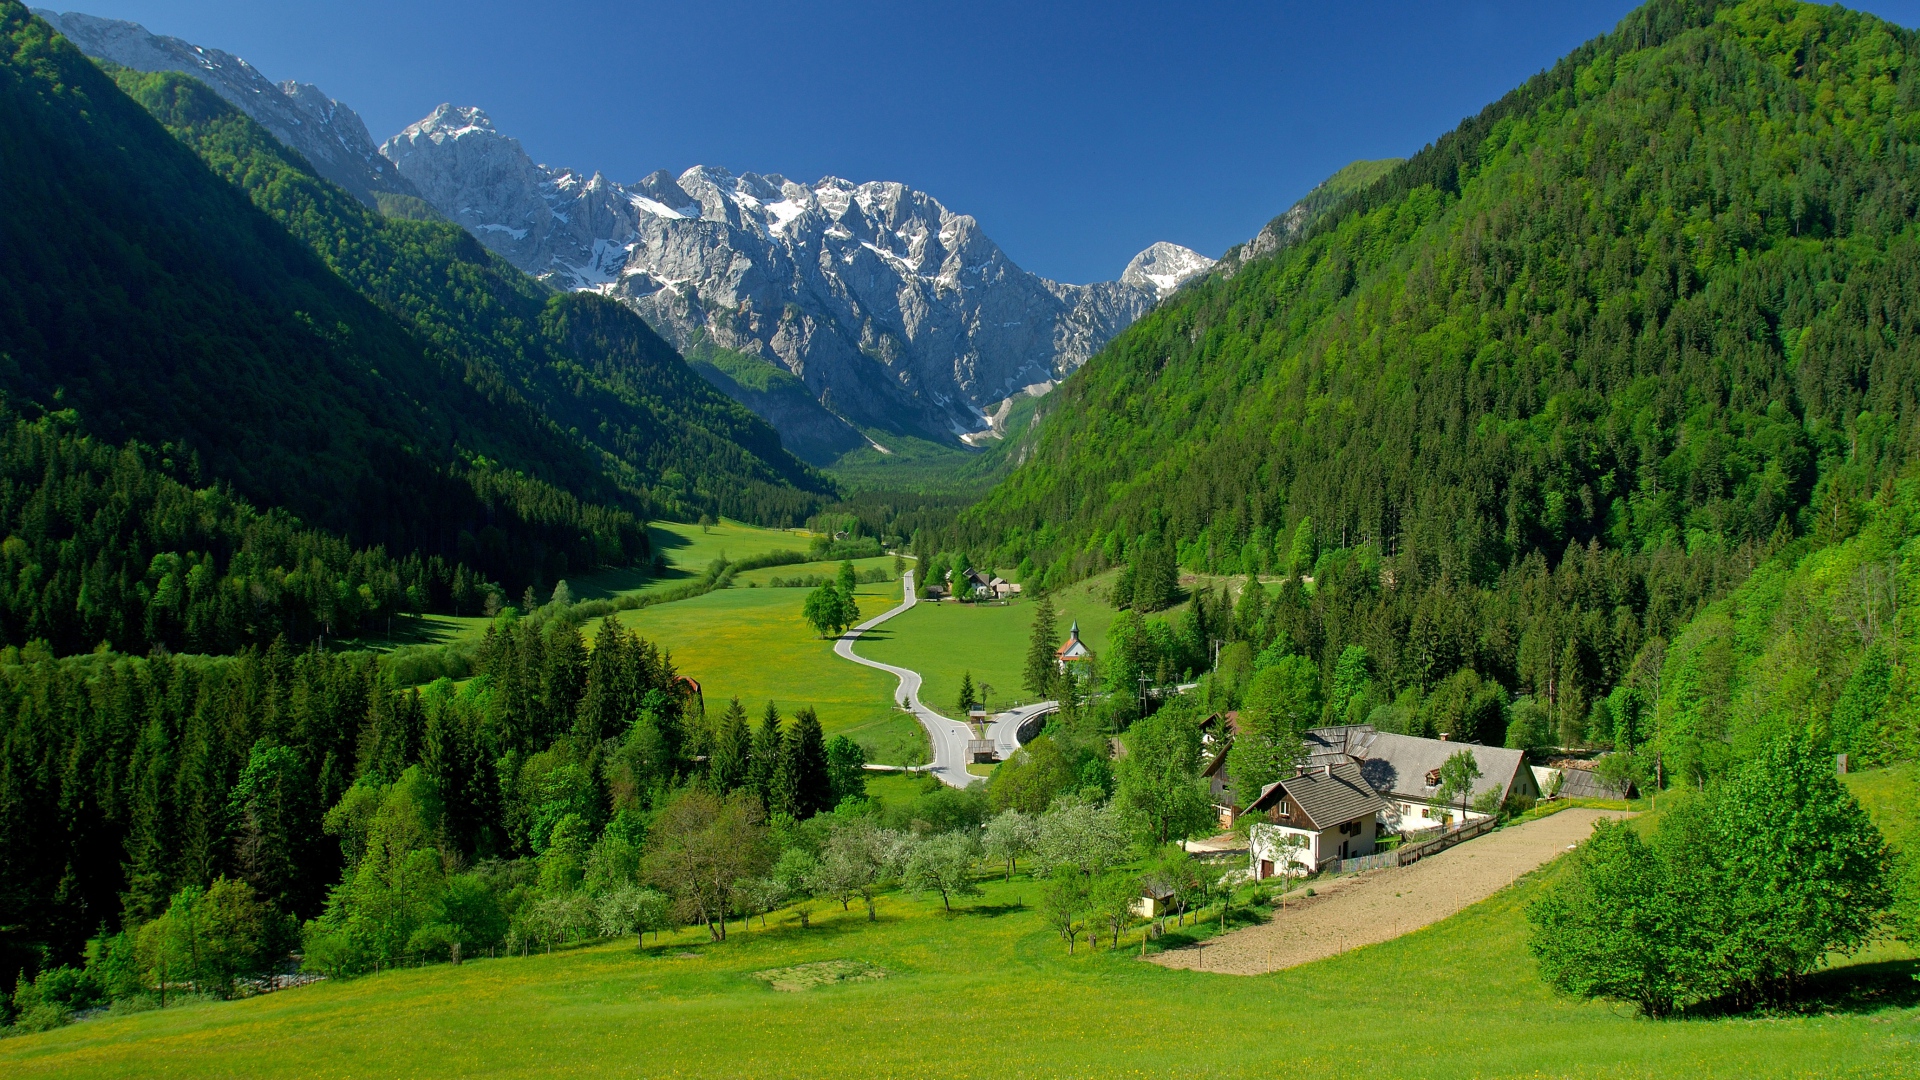 Spring Alpine Valley Mountains Fields Landscape